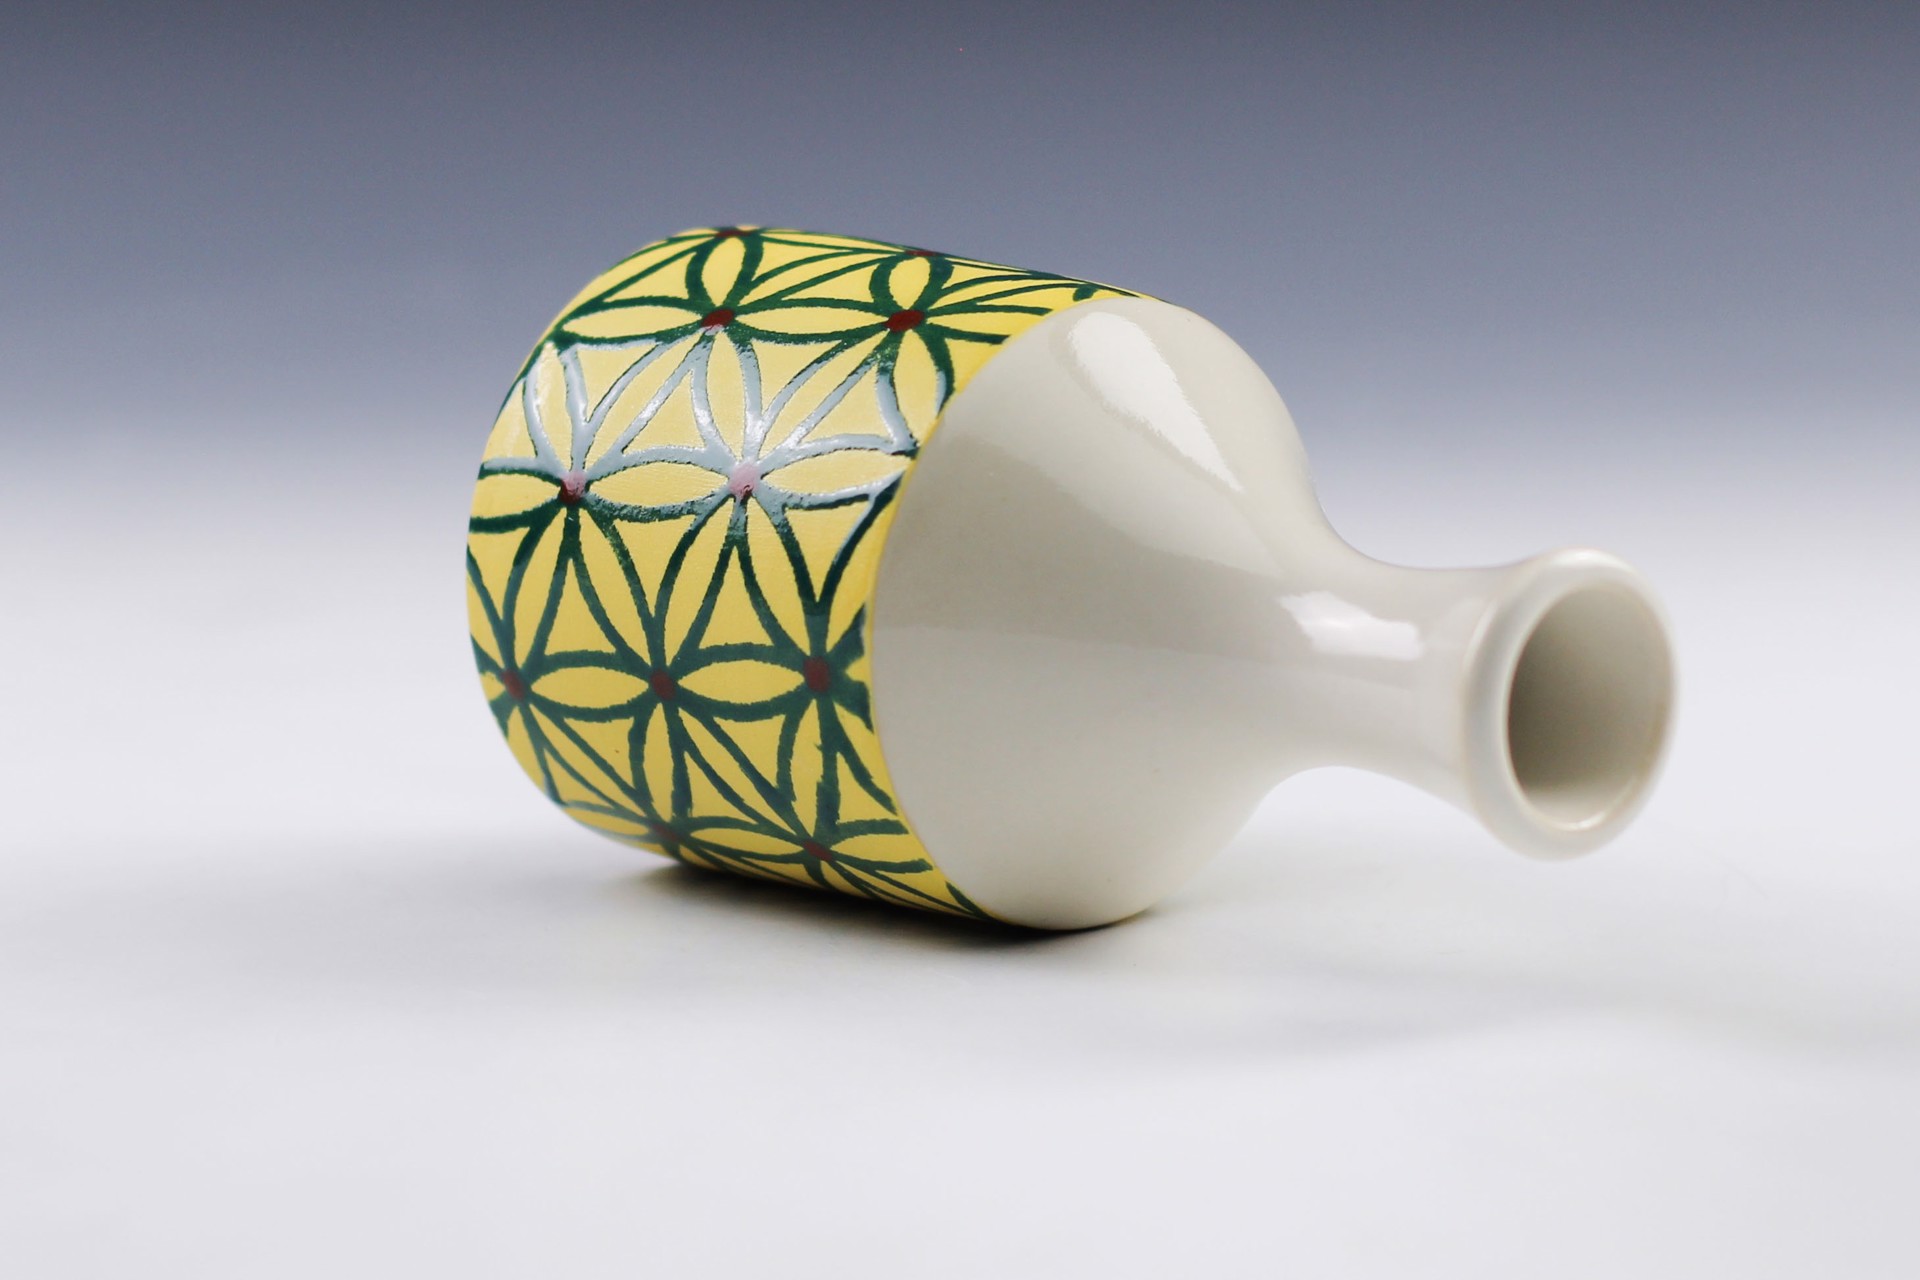 Bud Vase by Rachelle Miller